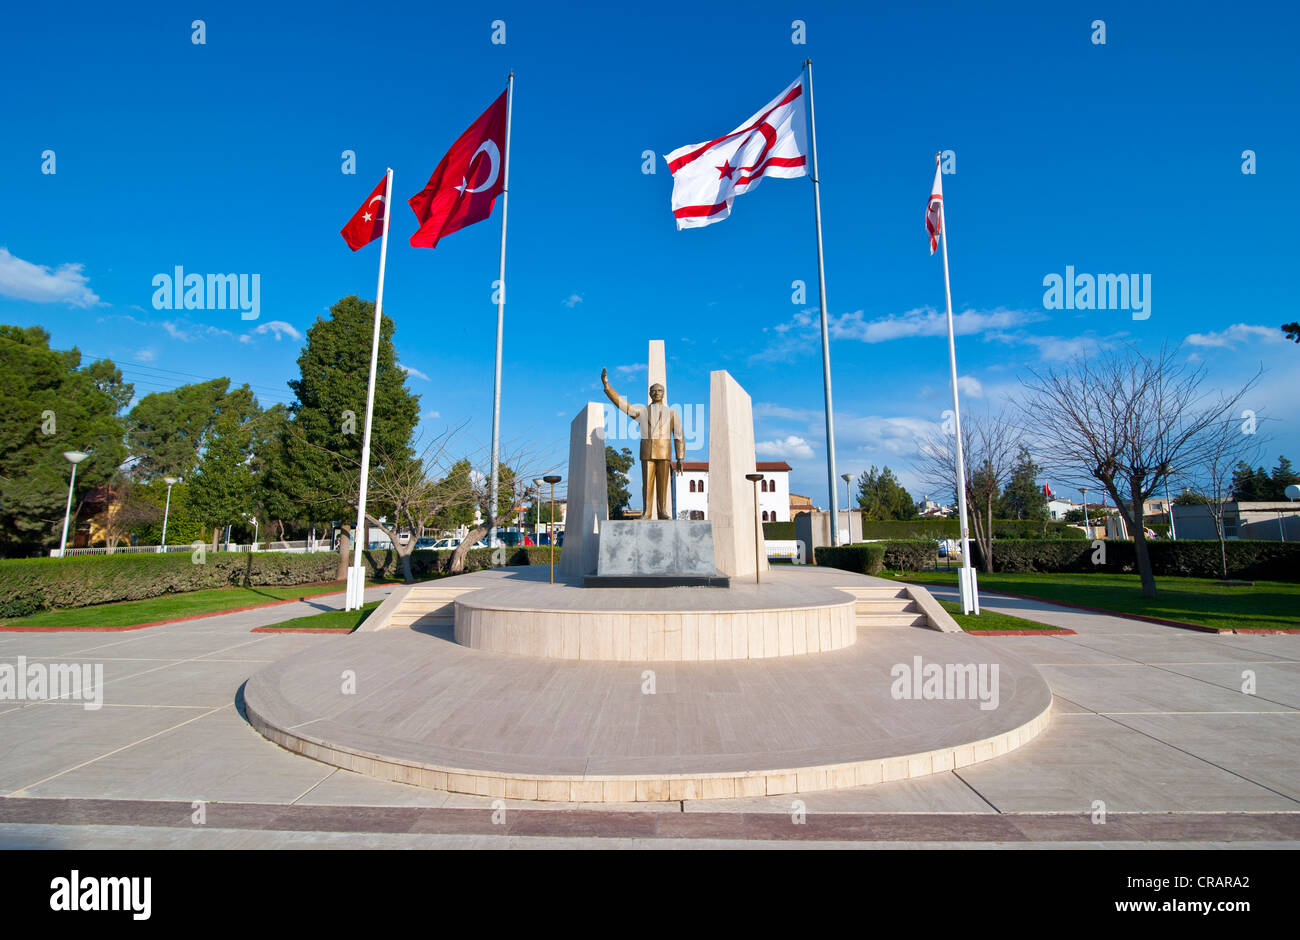 Monument for Mustafa Kemal Atatuerk, Turkish part of Cyprus Stock Photo